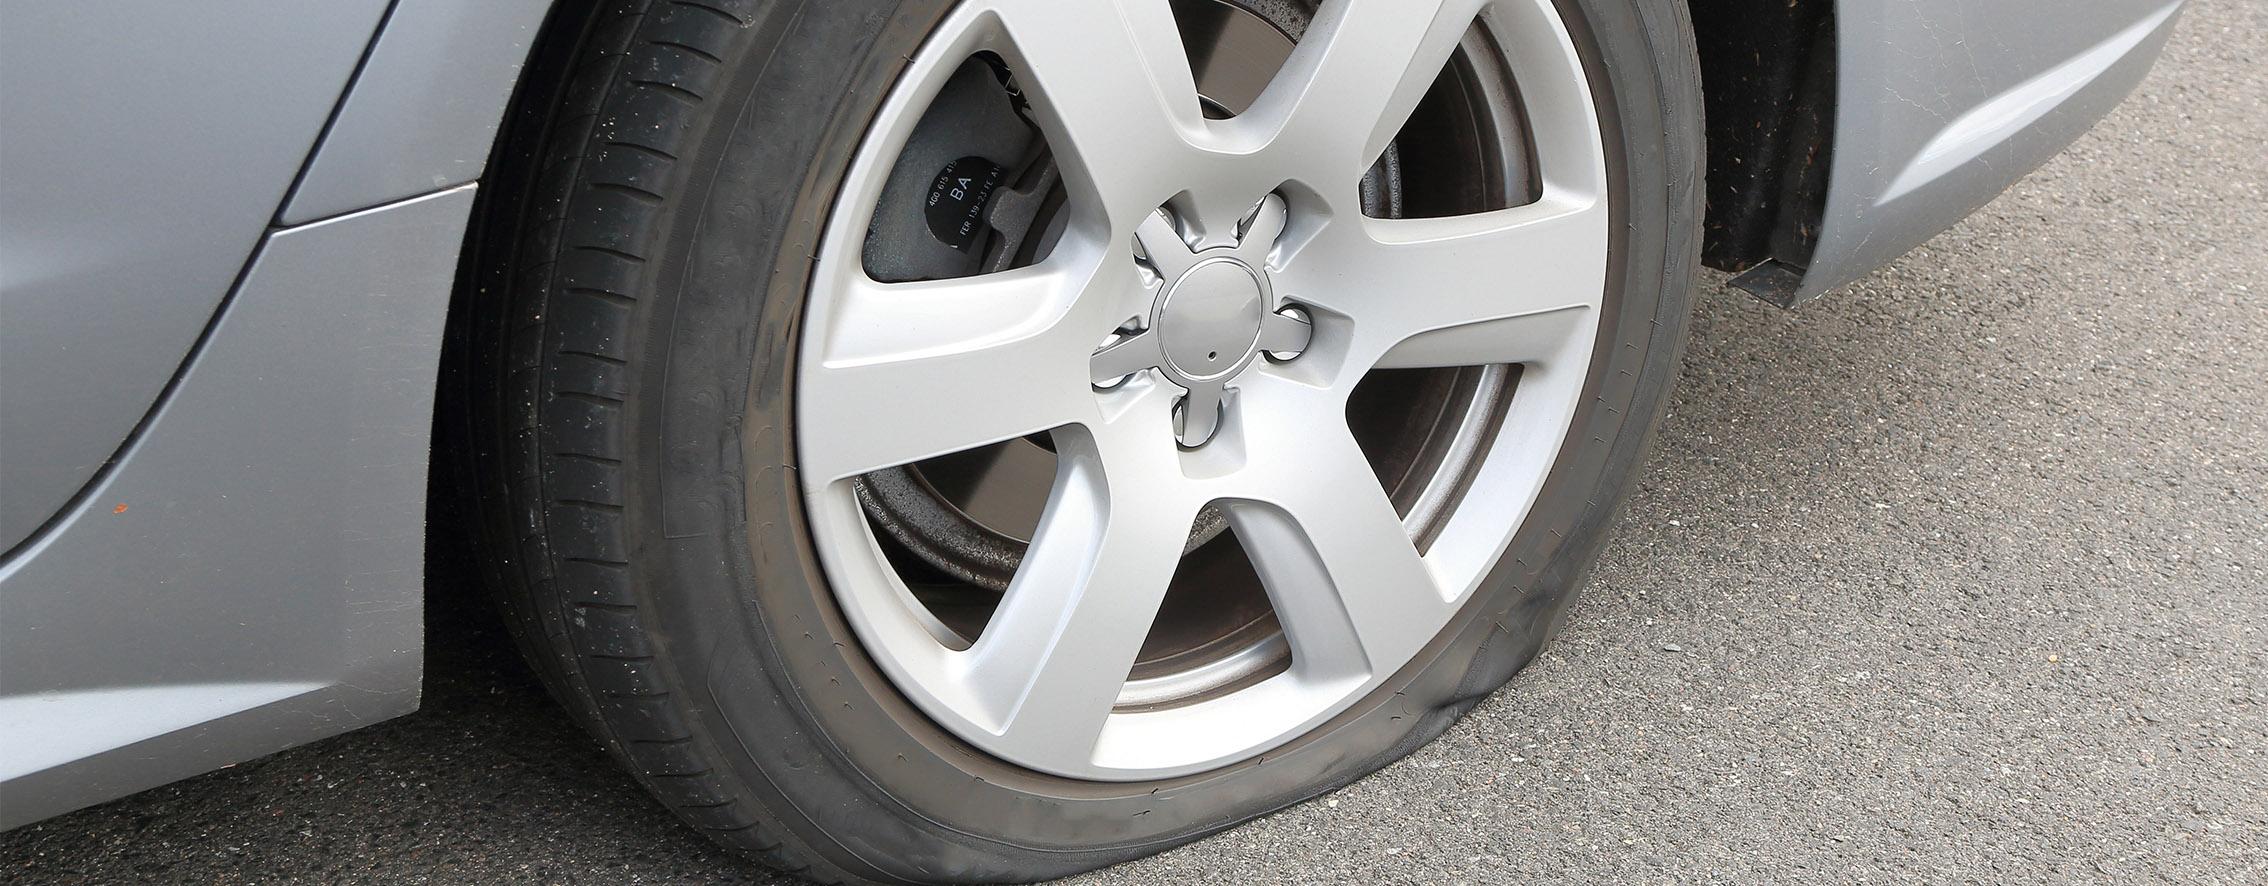 Ansicht auf das linke Hinterrad eines grauen PKWs, das platt ist und für das ein Reifenpannenset benötigt wird